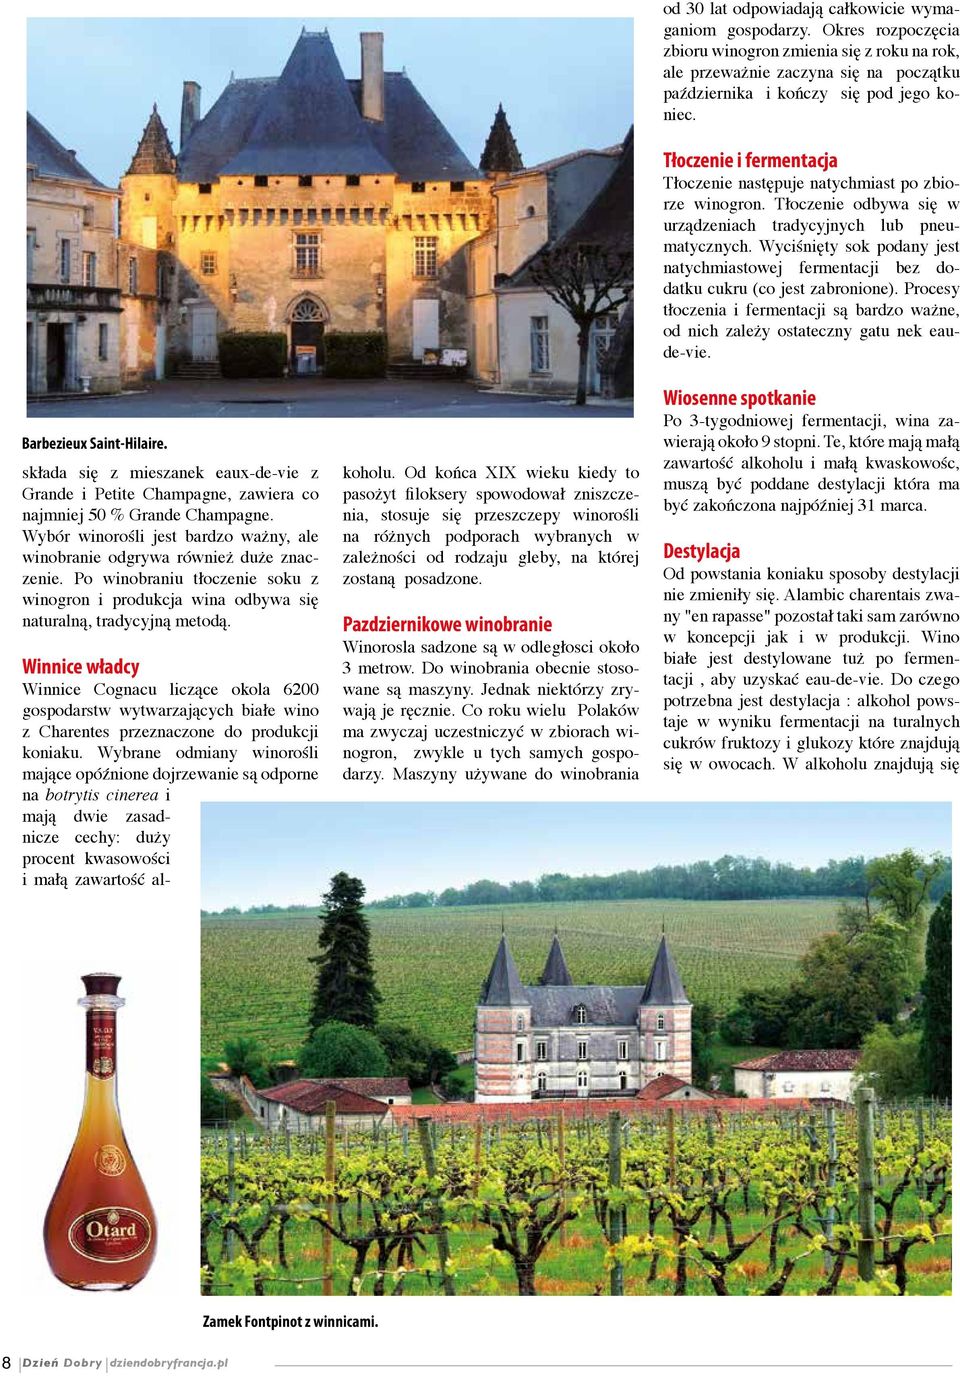 Winnice władcy Winnice Cognacu liczące okola 6200 gospodarstw wytwar zających białe wino z Charentes przez naczone do produkcji koniaku.